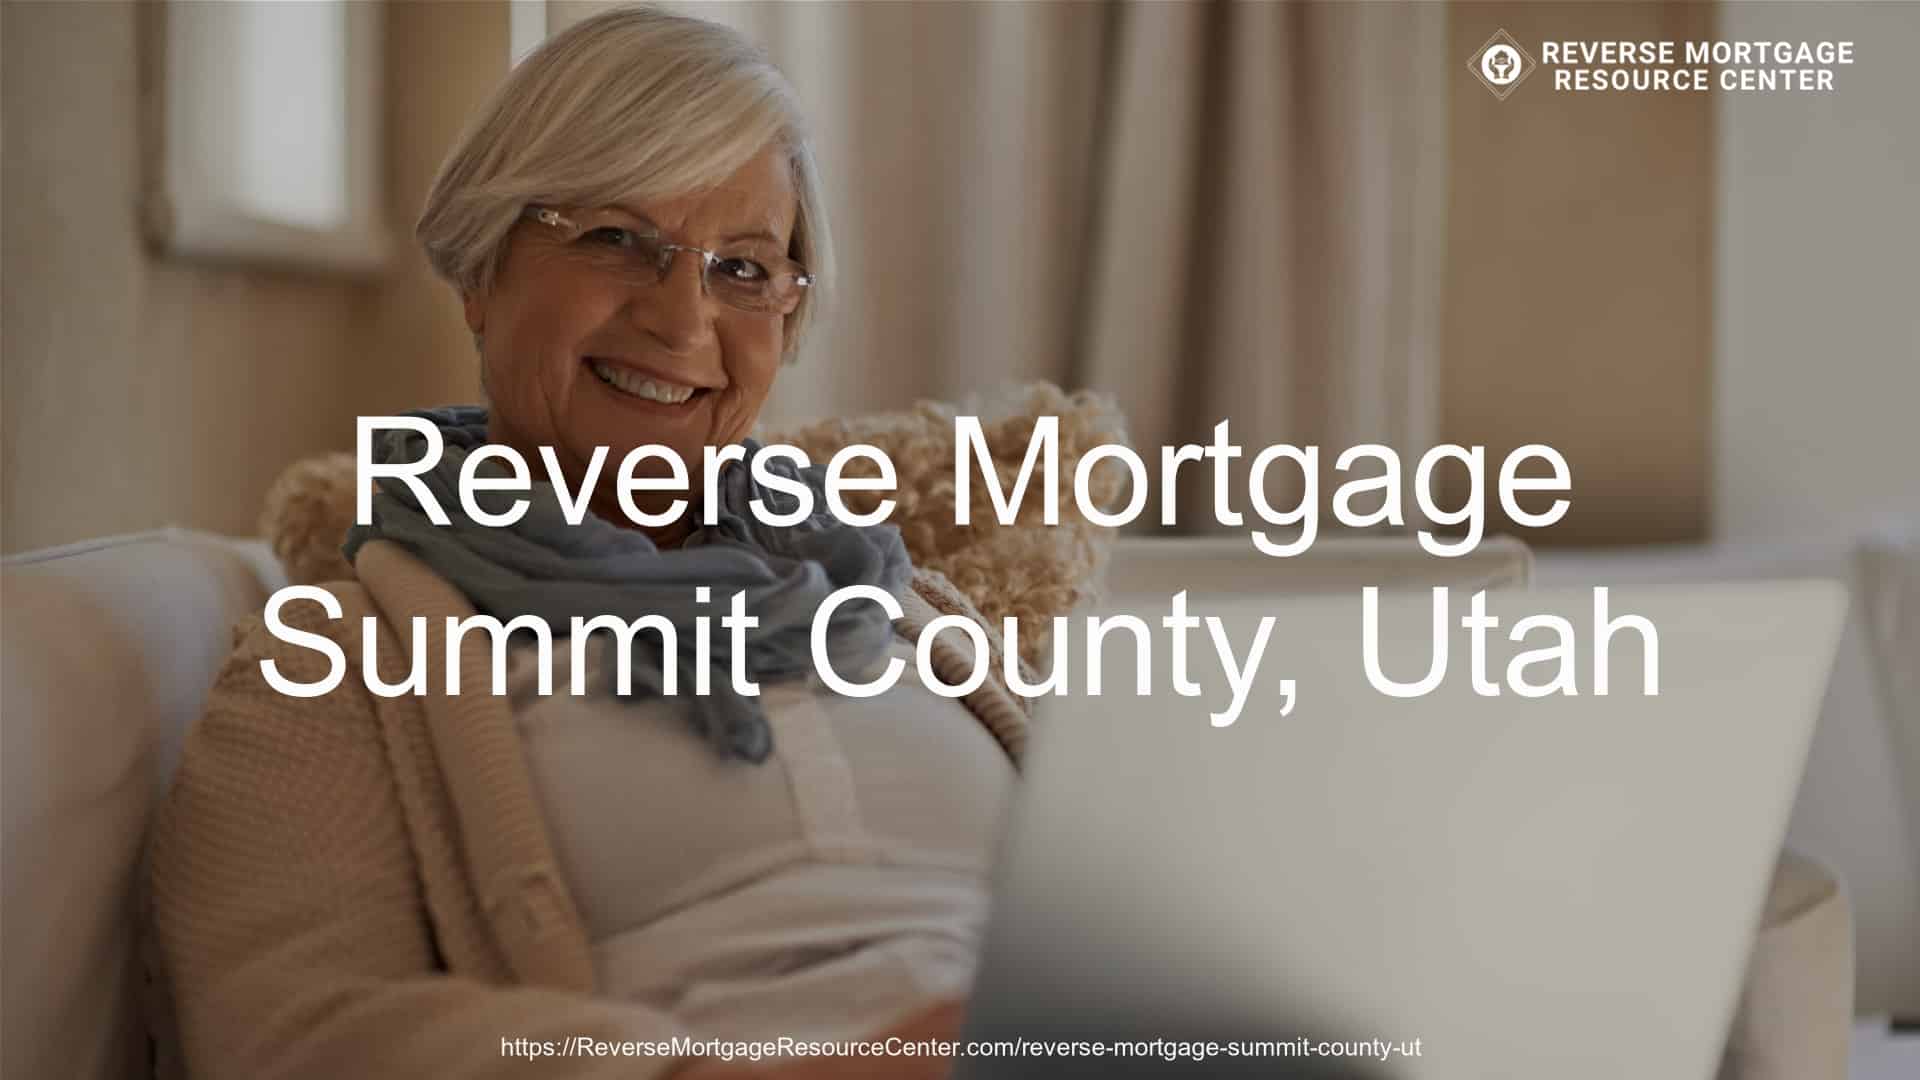 Reverse Mortgage Loans in Summit County Utah